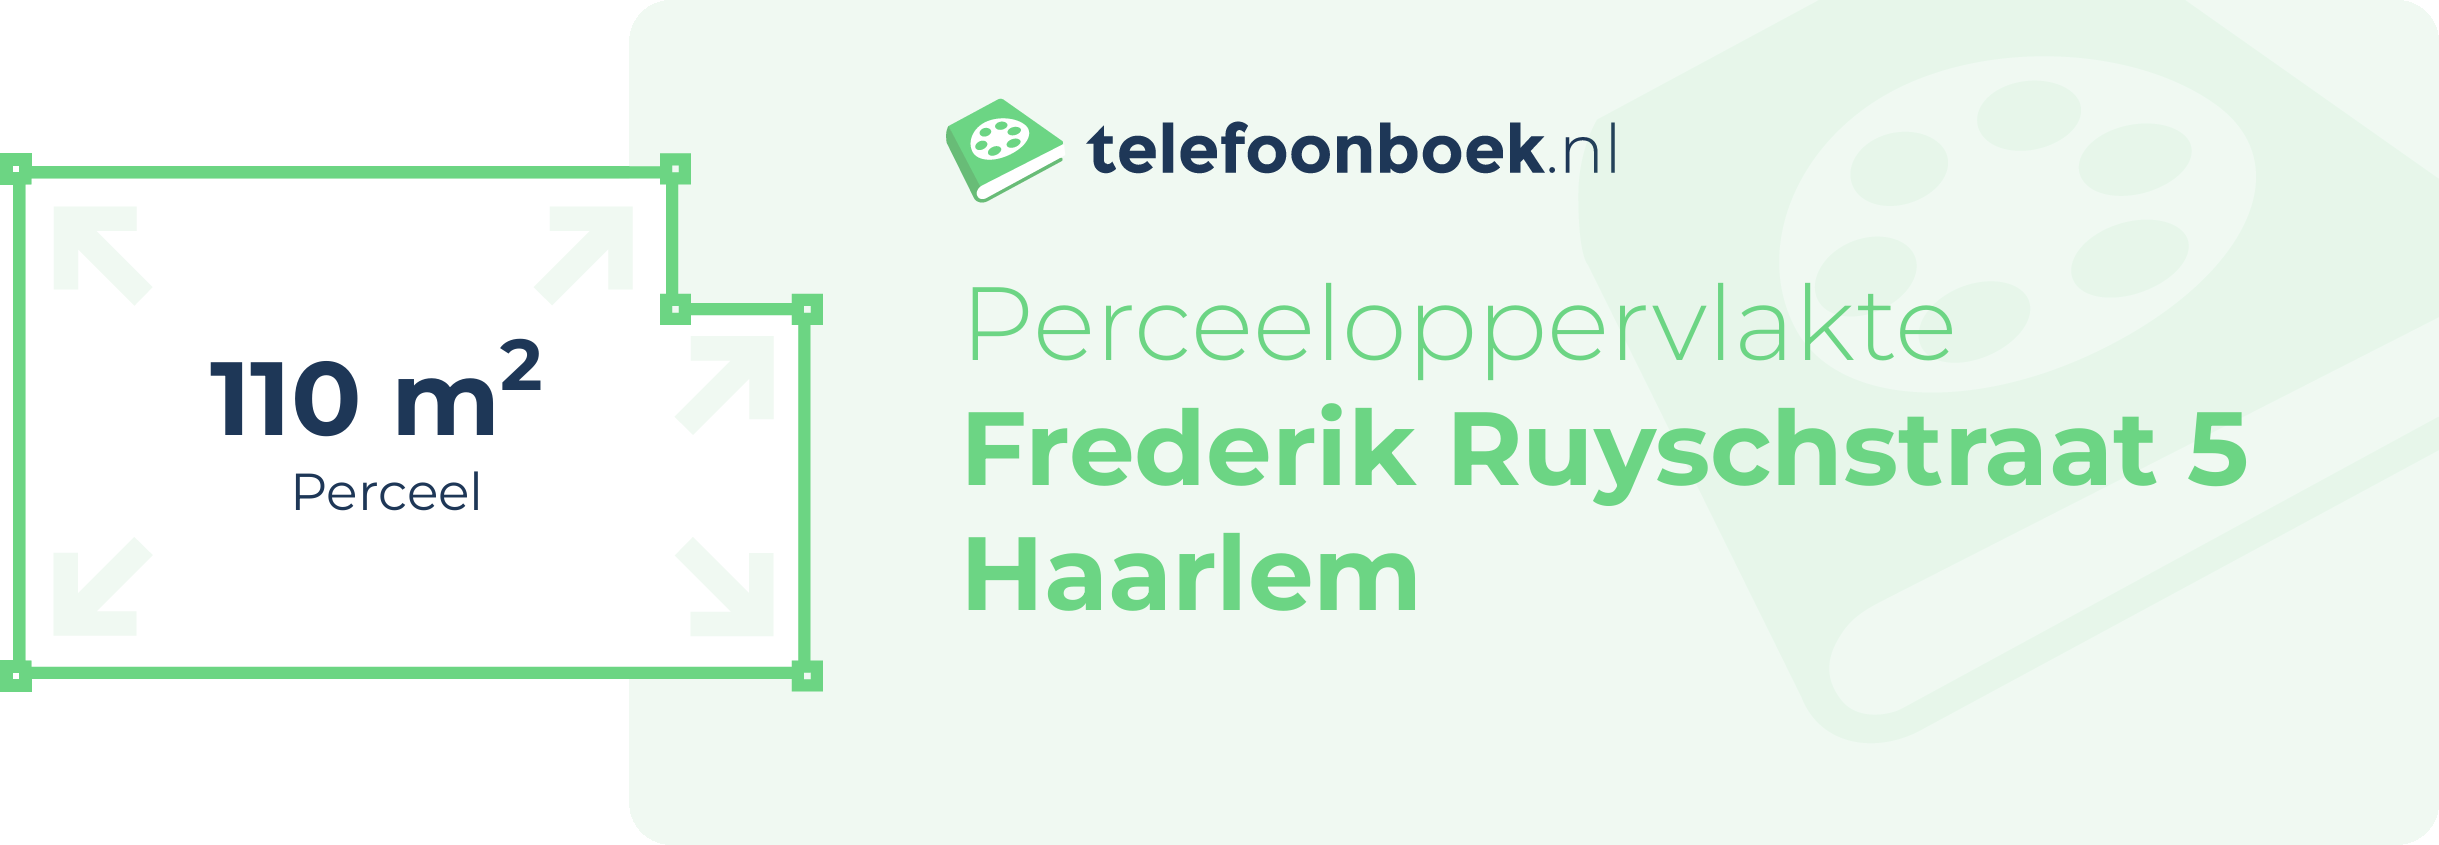 Perceeloppervlakte Frederik Ruyschstraat 5 Haarlem